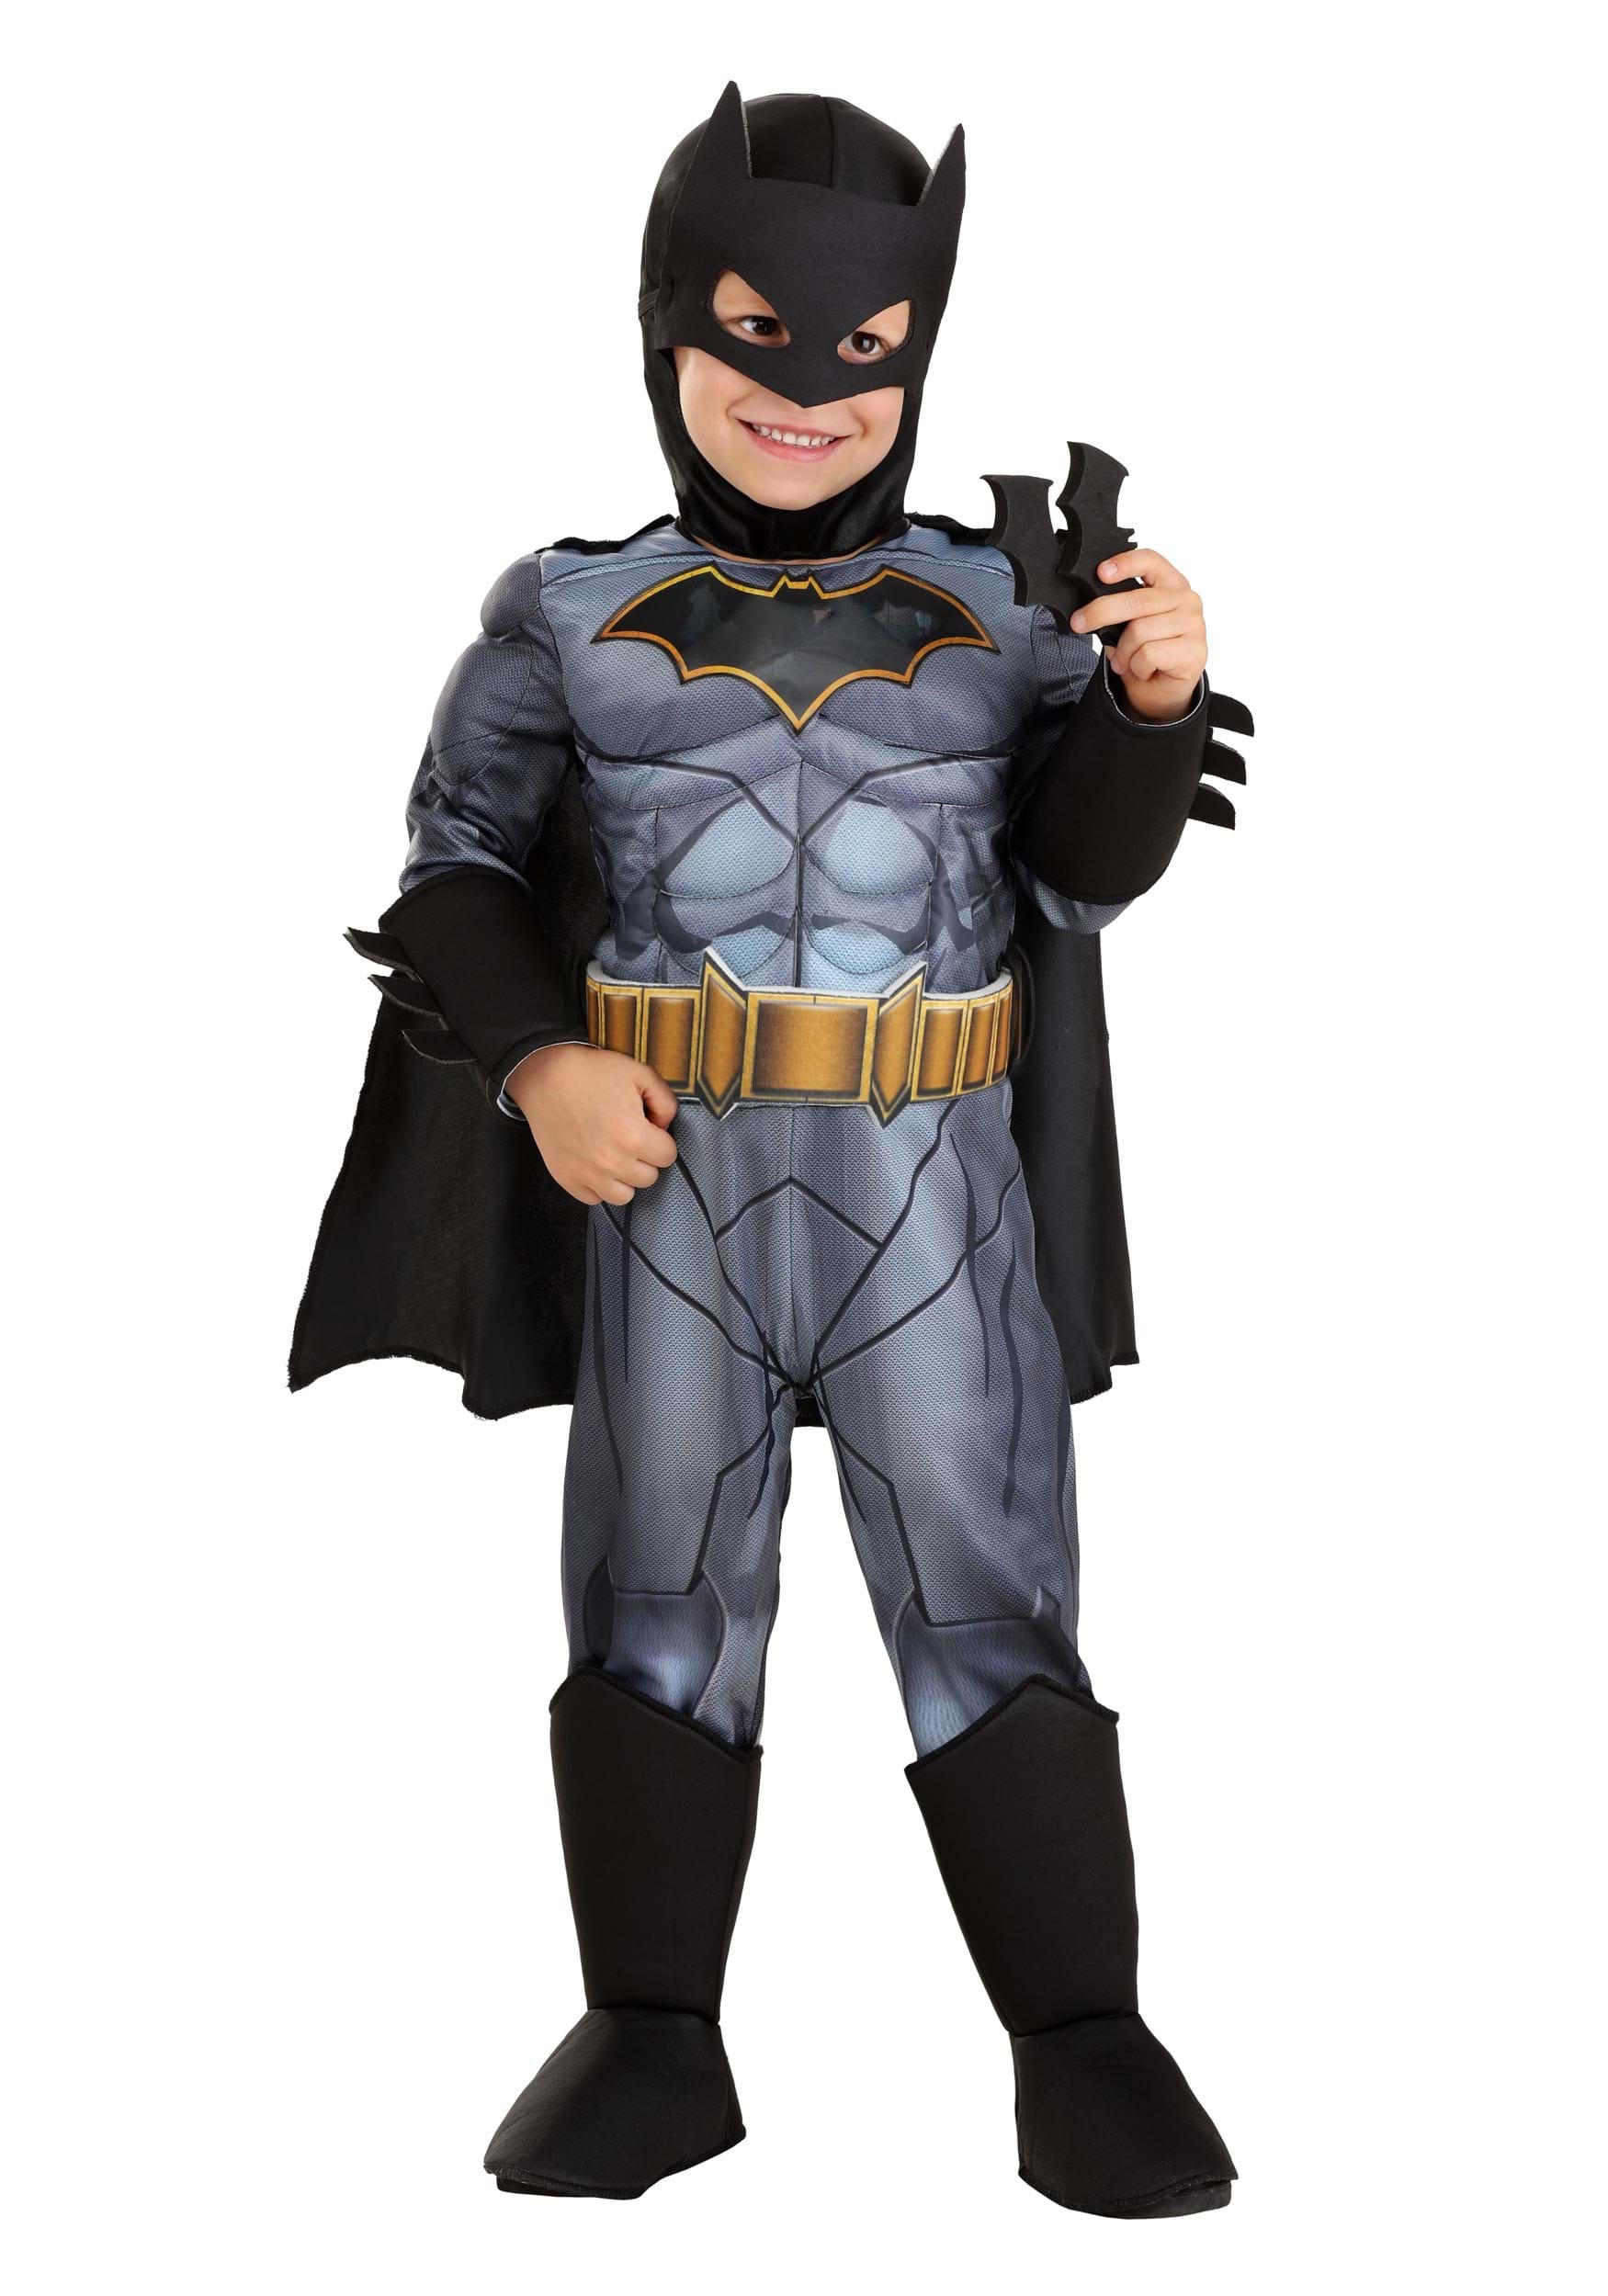 DC Comics Deluxe Batman Toddler Costume